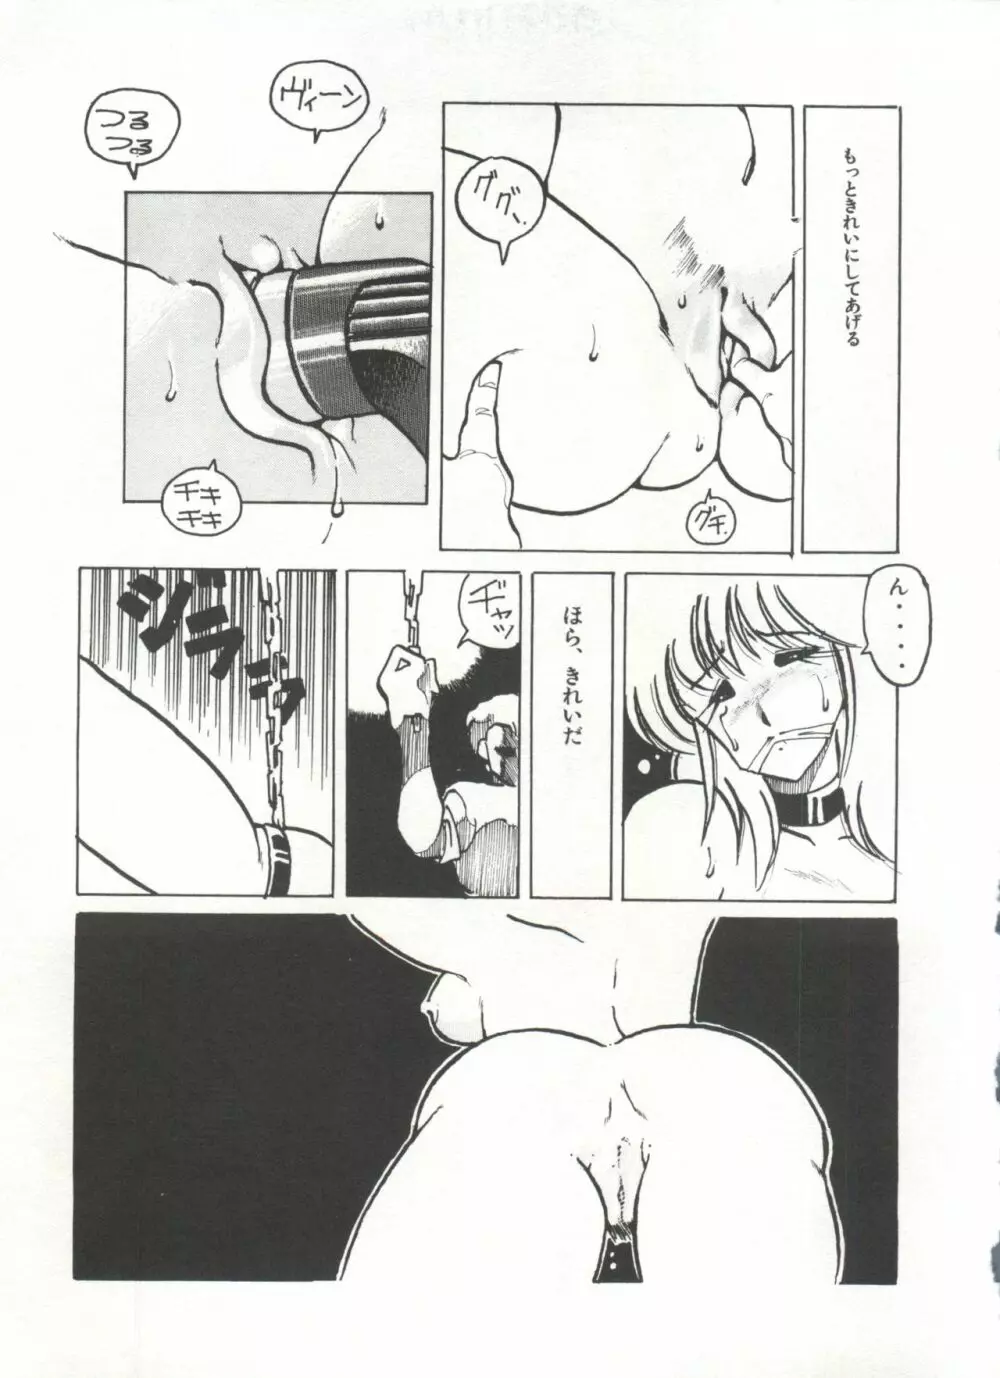 [Anthology] 美少女症候群(2) Lolita syndrome (よろず) 28ページ